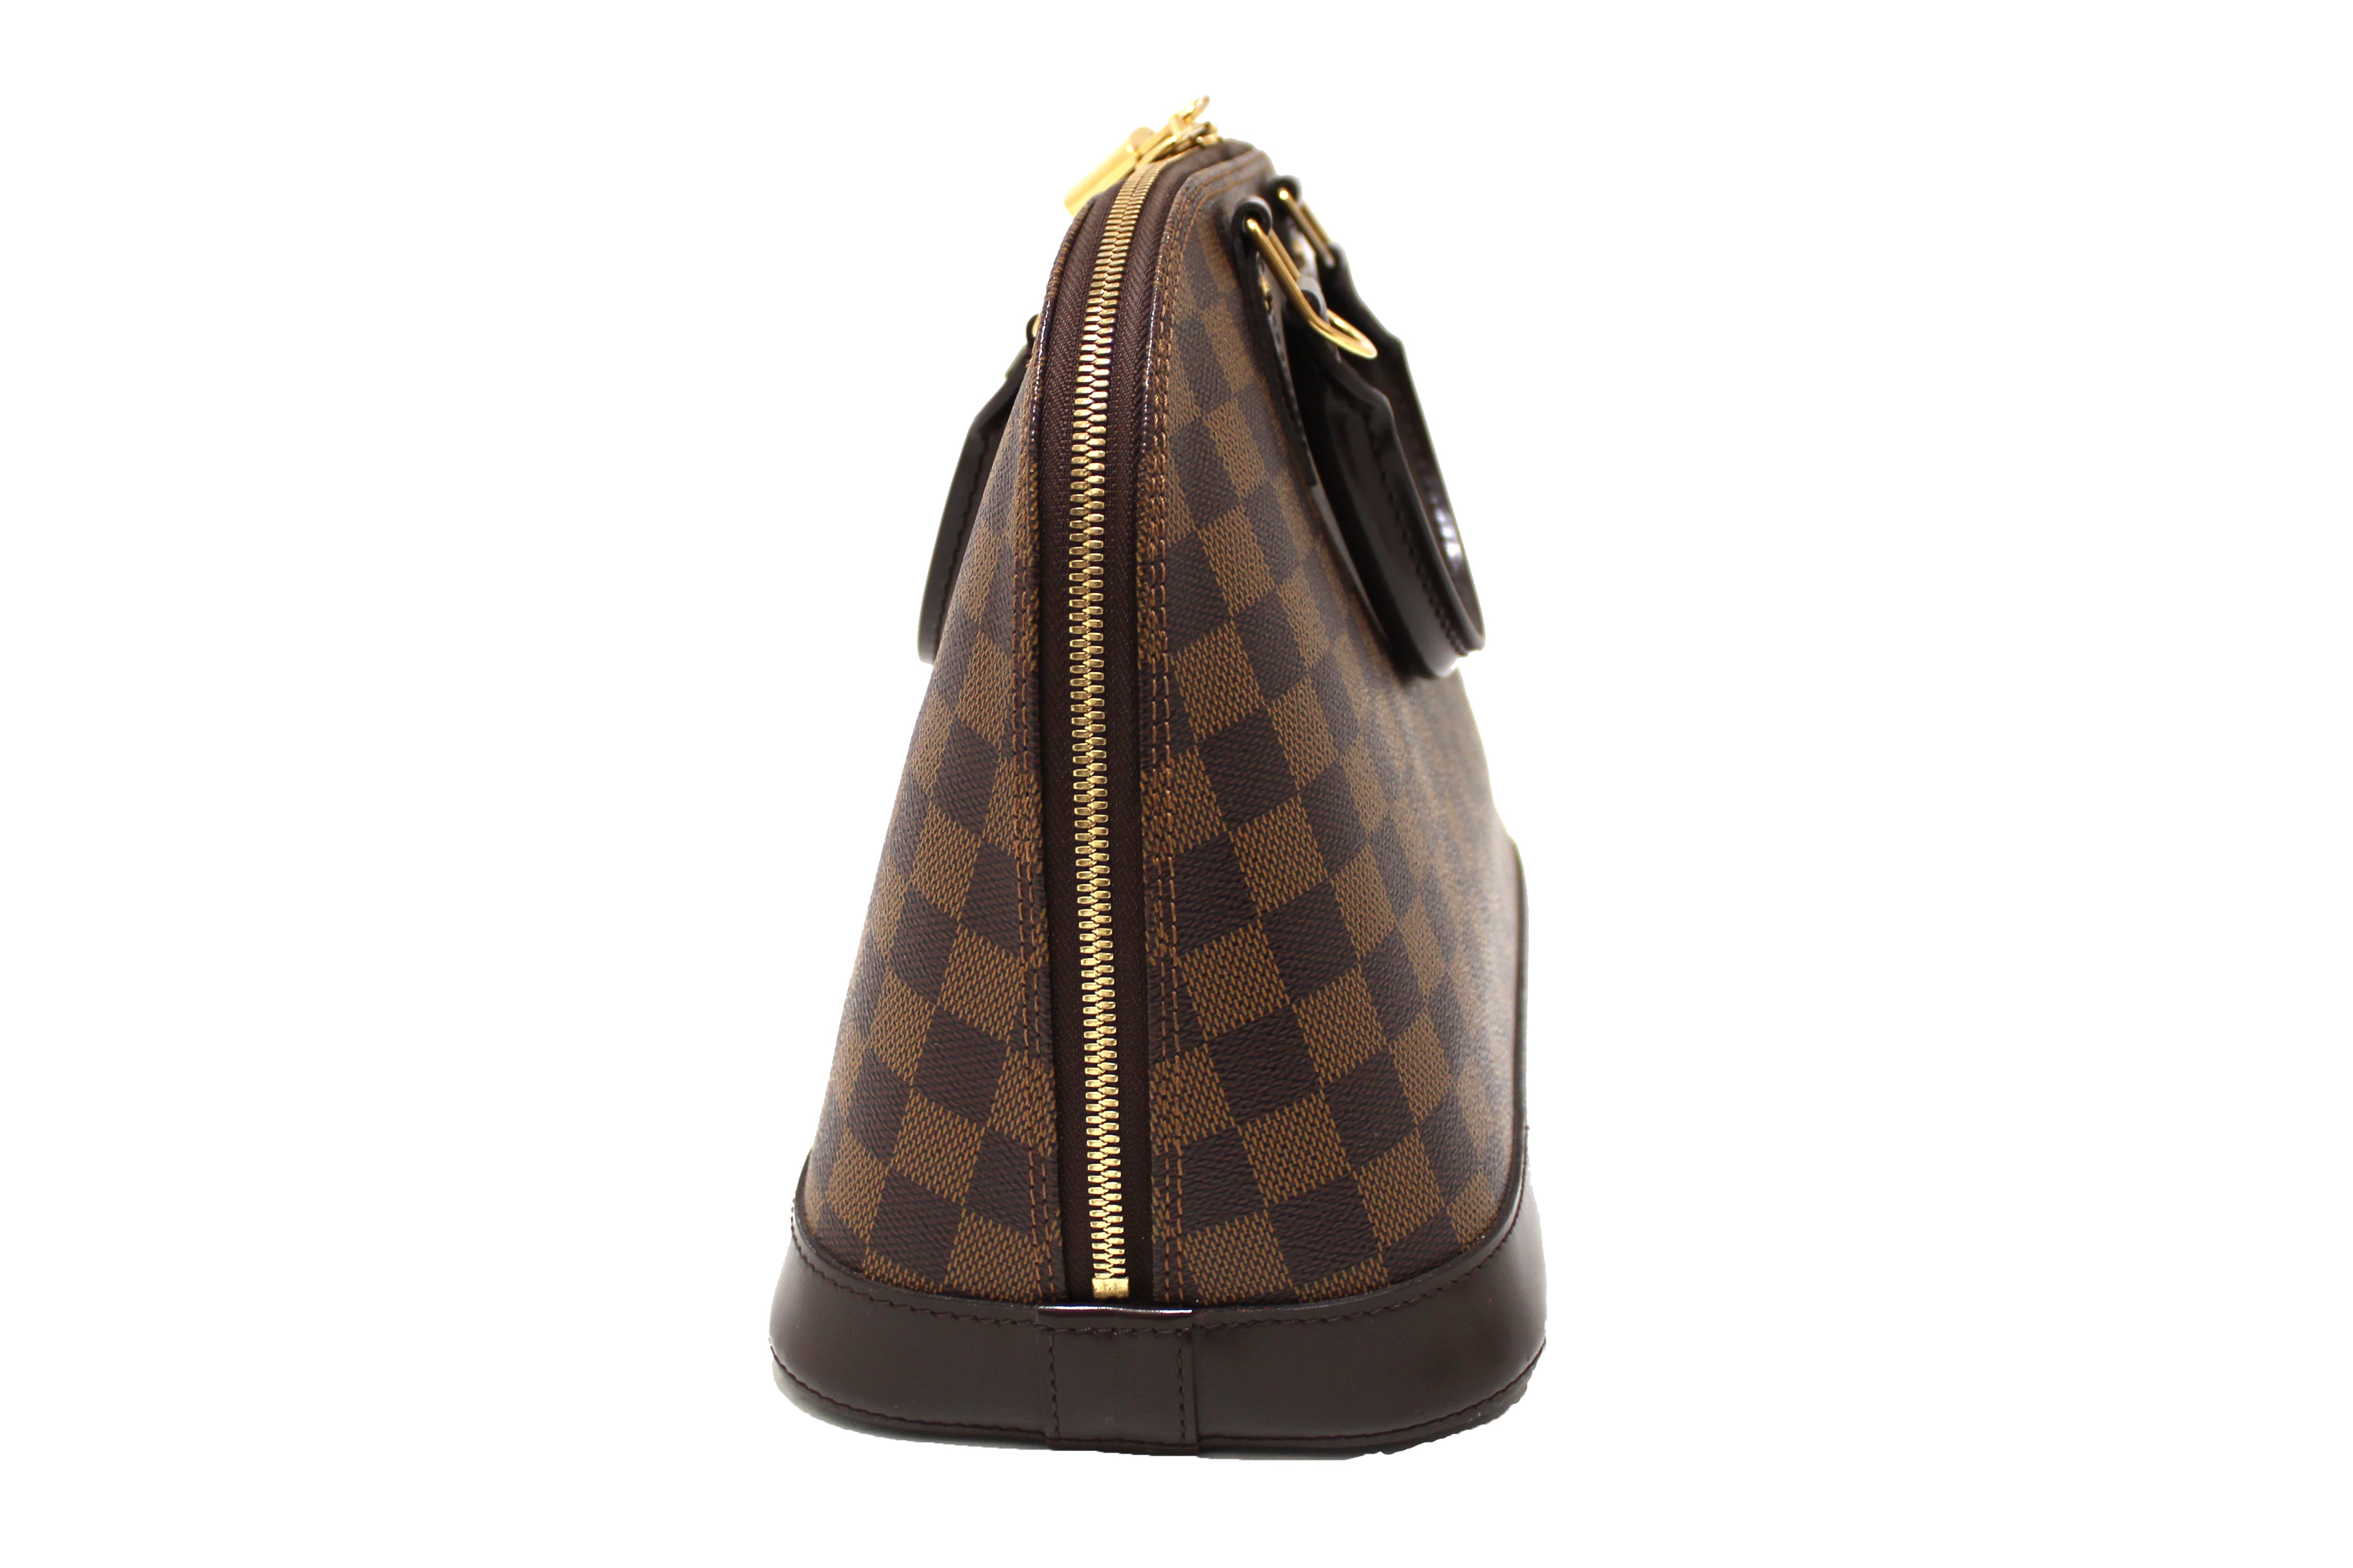 Authentic Louis Vuitton Damier Ebene Canvas Classic Alma PM Hand Bag